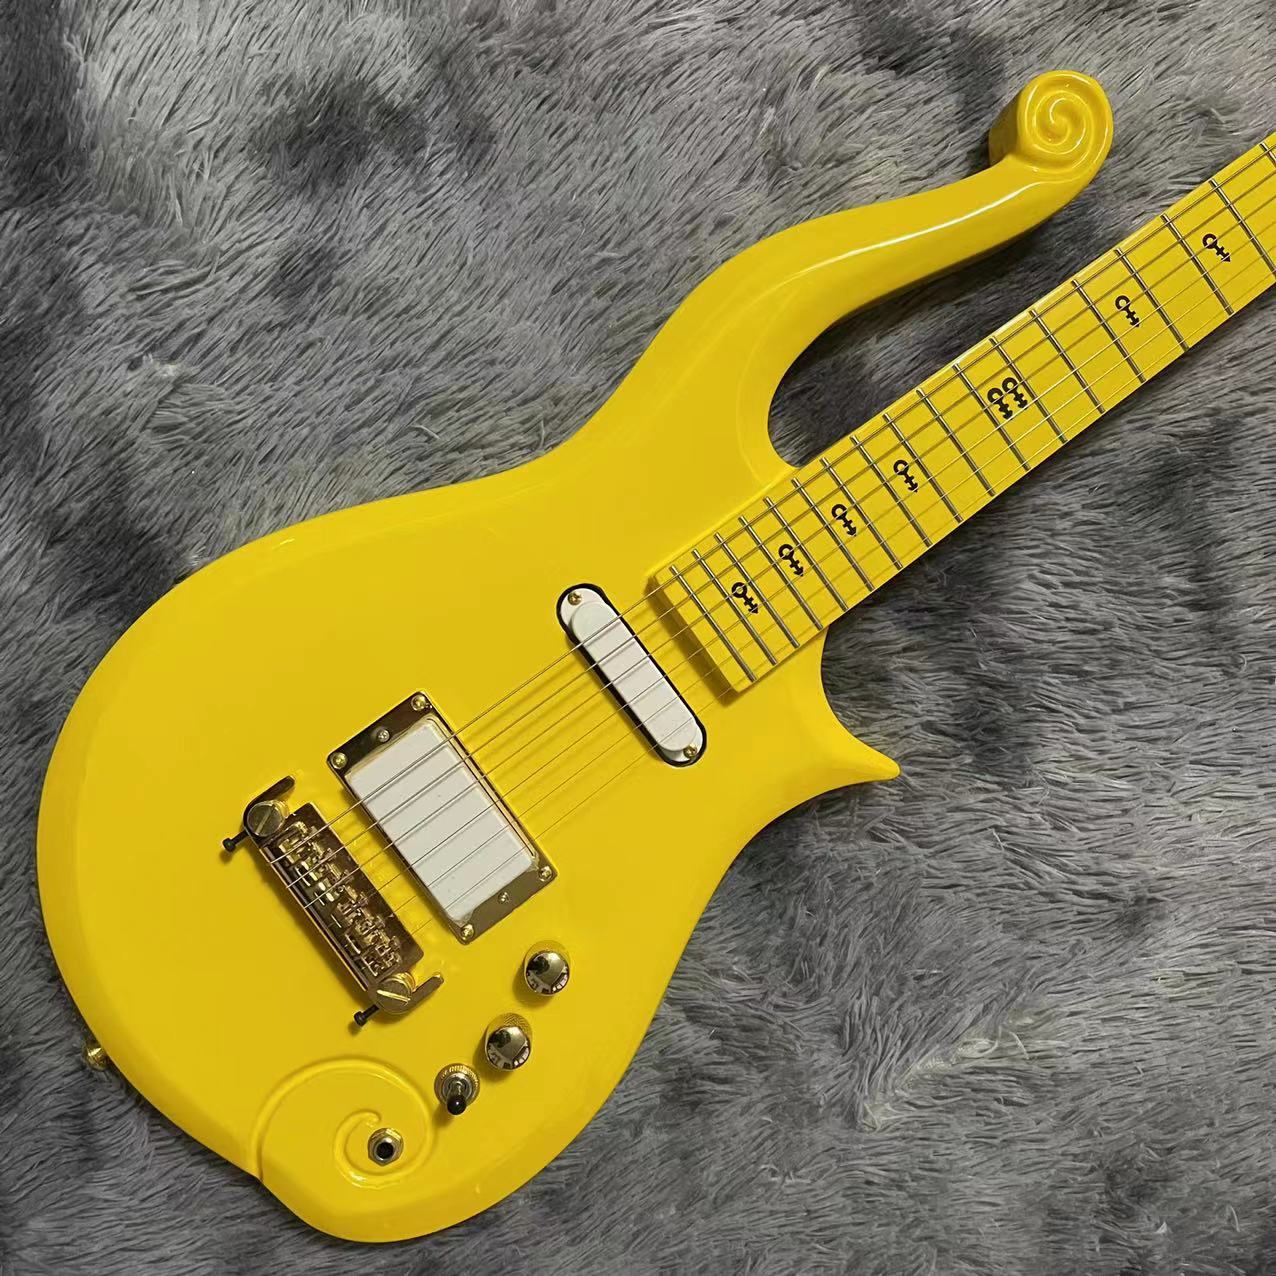 Guida di fingerboard di acero personalizzato collo in mogano principe nuvola elettrica chitarra elettrica con colore giallo